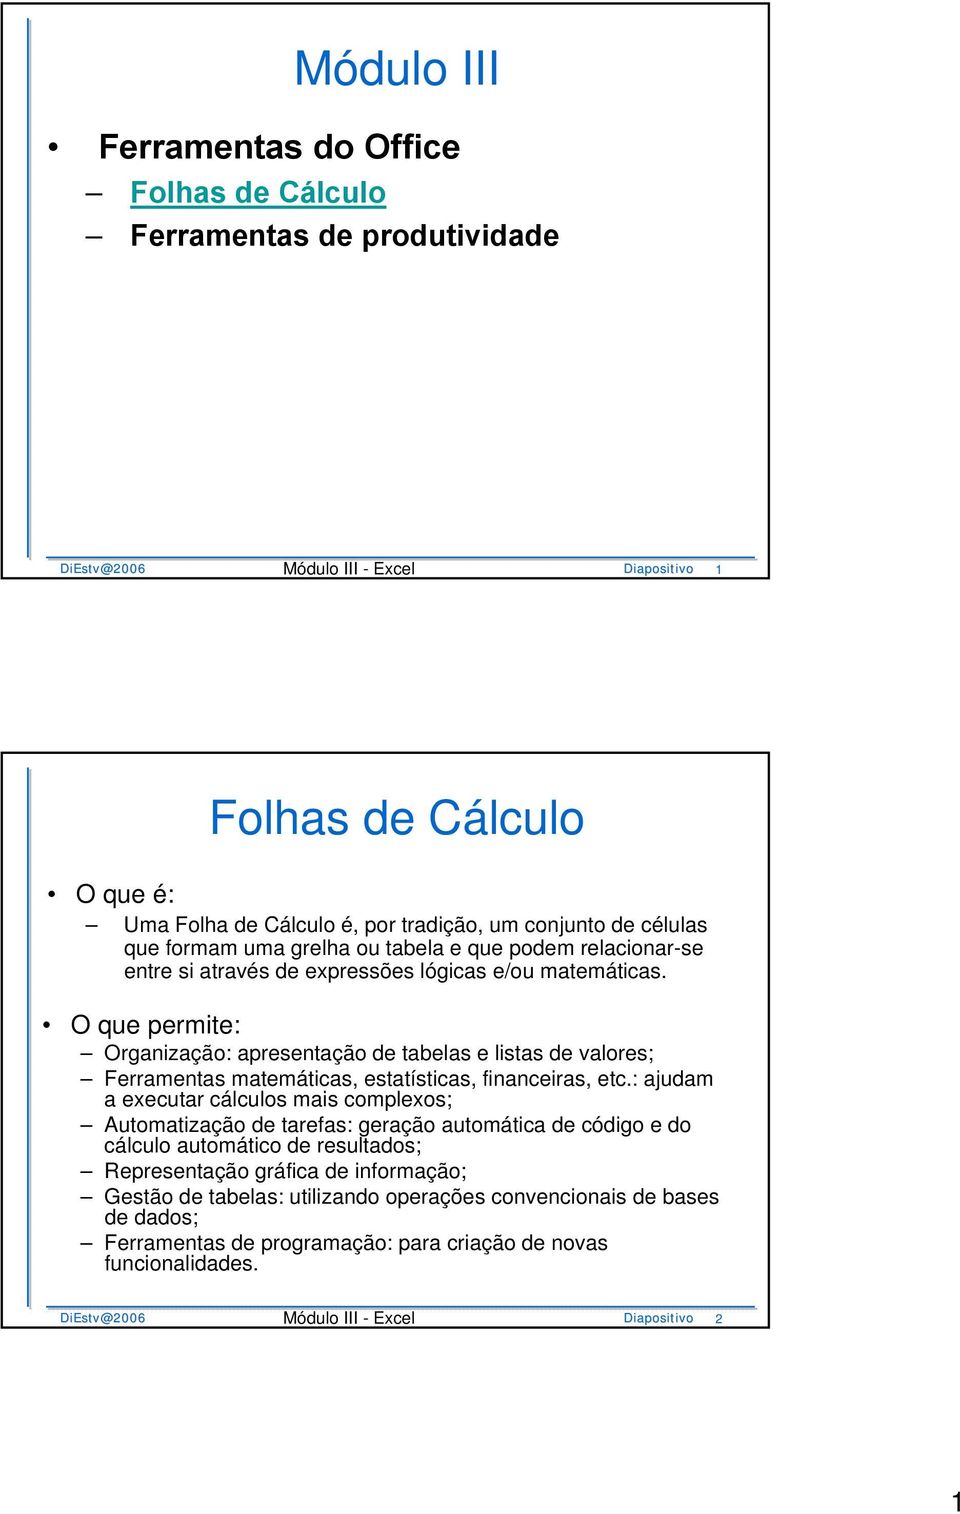 O que permite: Organização: apresentação de tabelas e listas de valores; Ferramentas matemáticas, estatísticas, financeiras, etc.